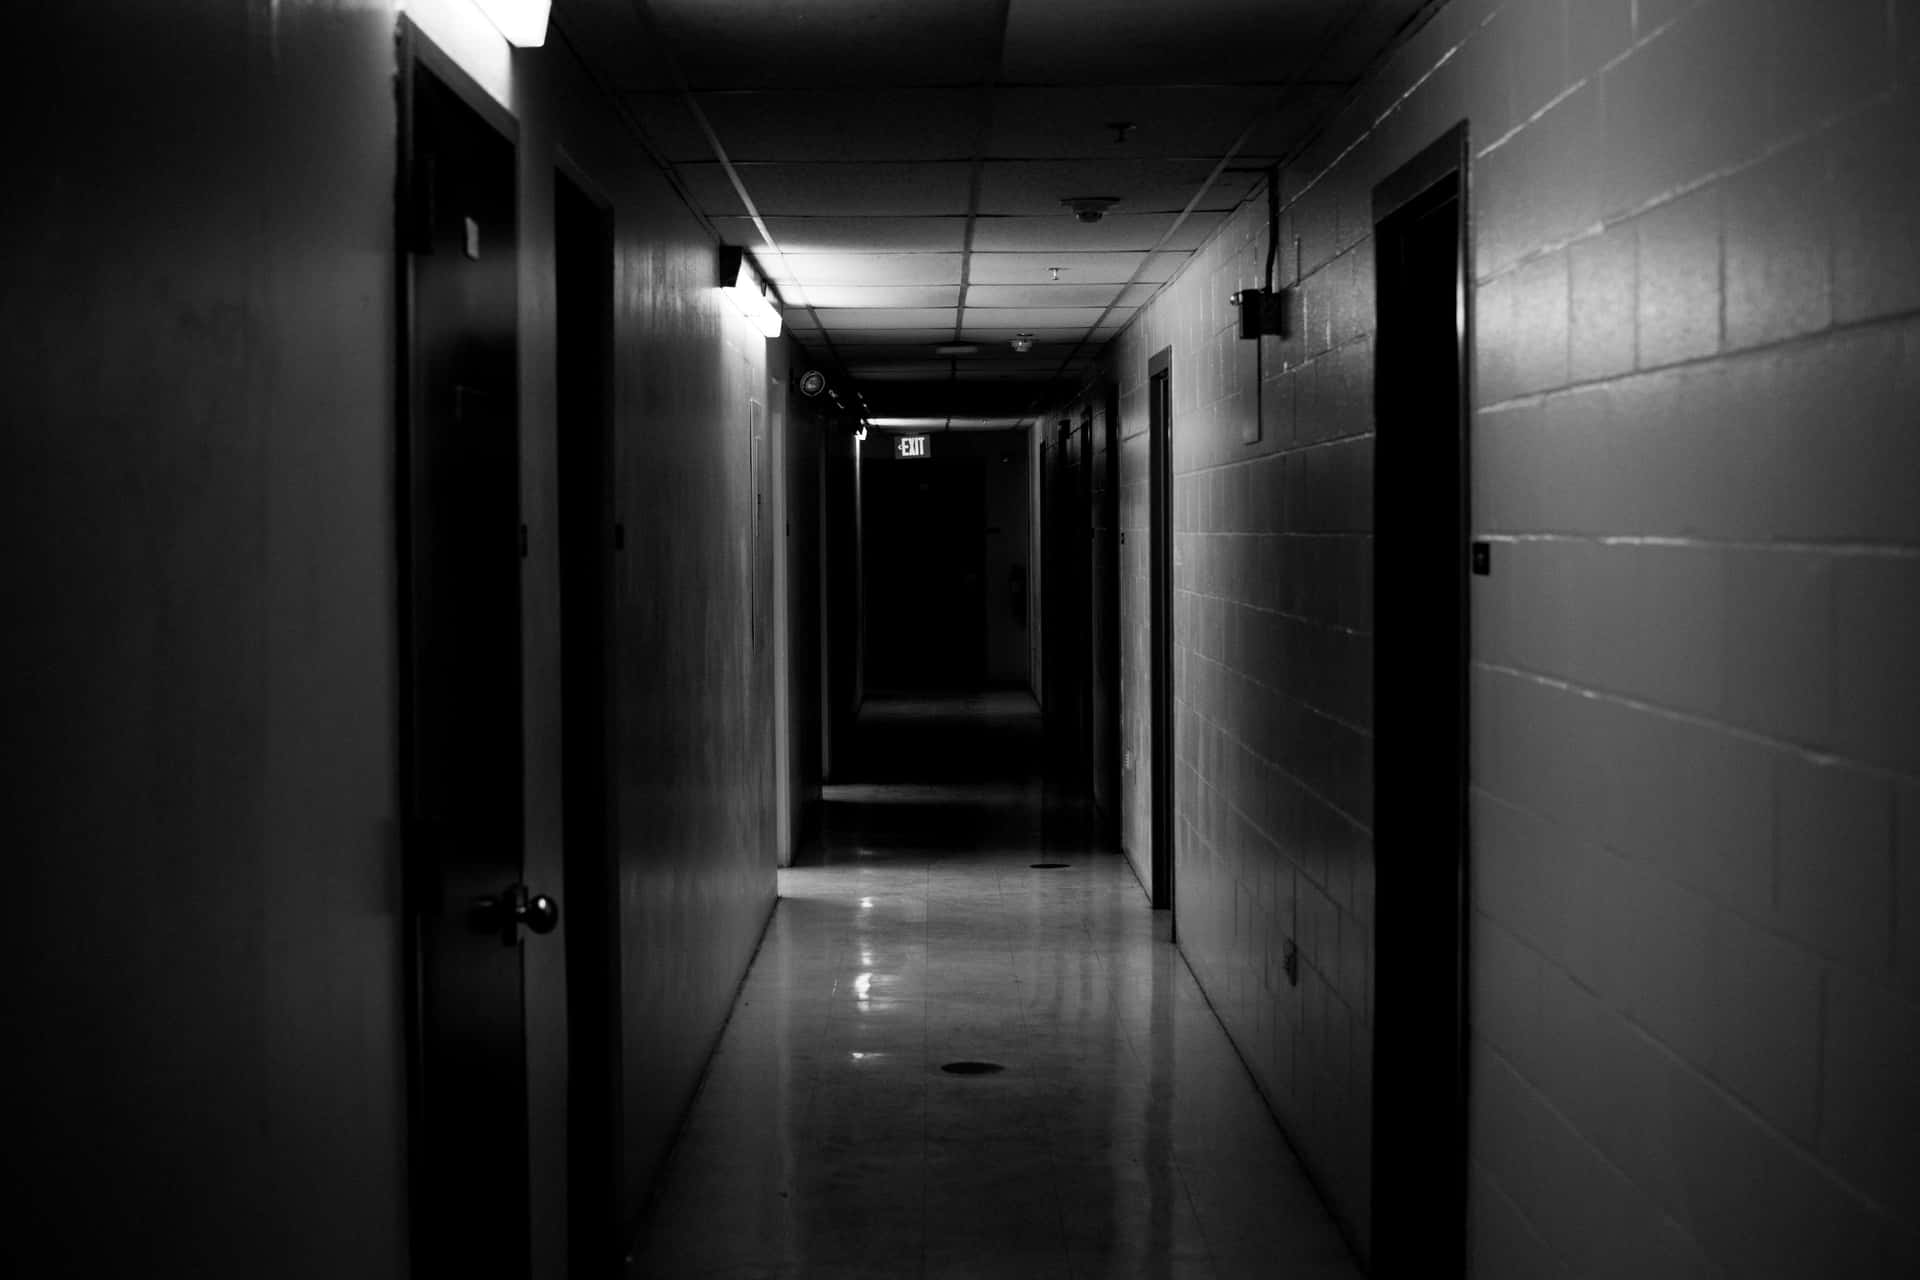 A Dark Hallway With A Light On